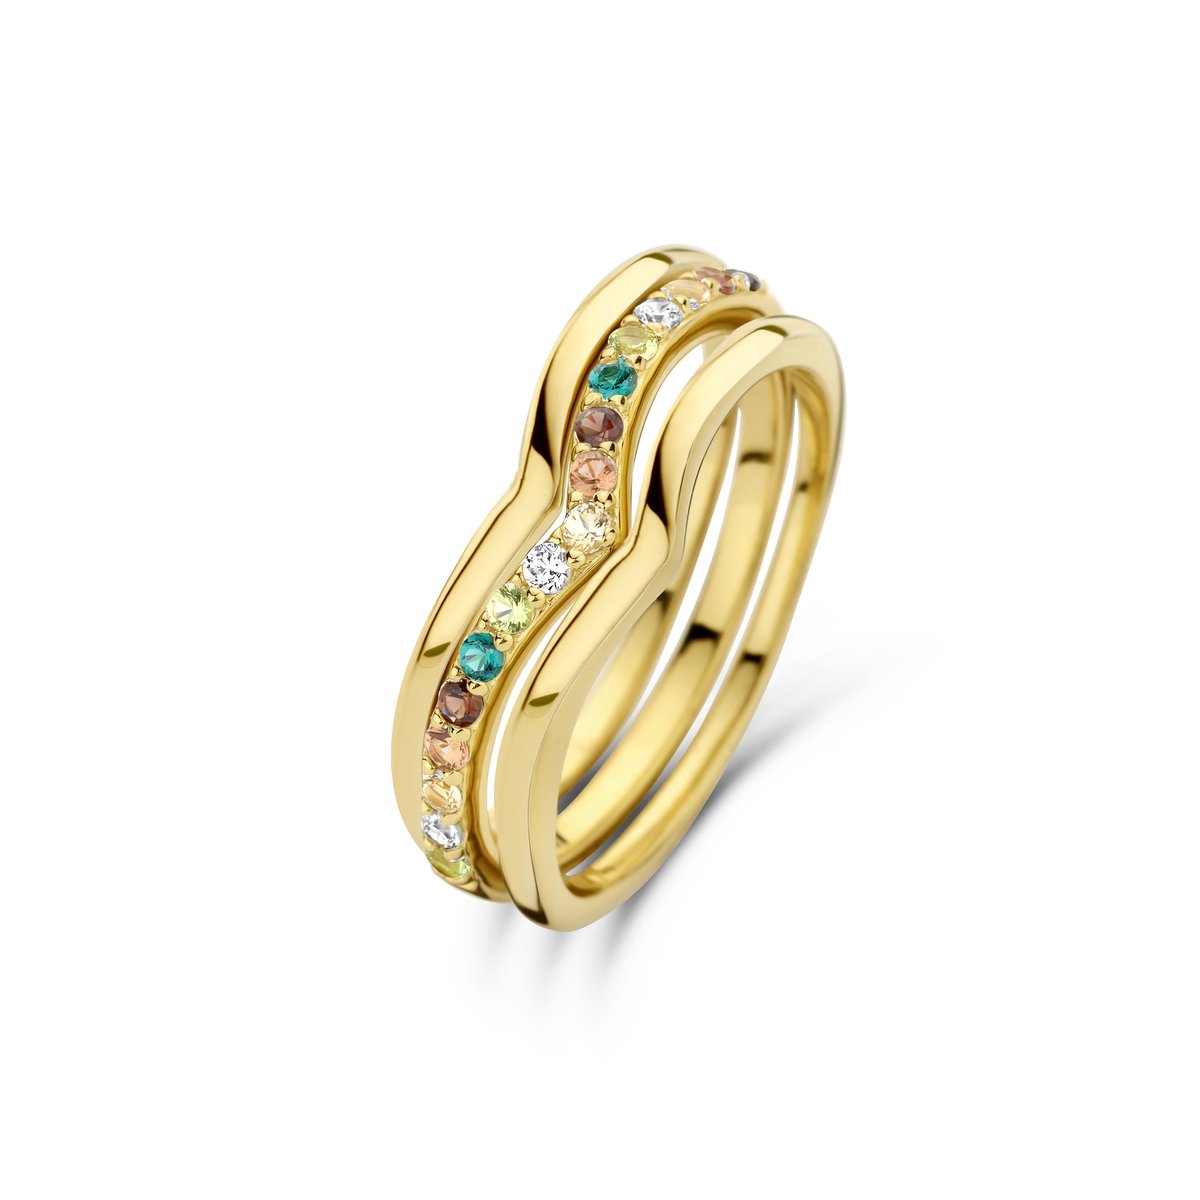 Parte Di Me Santa Maria Dames Ring Gouden plating;Zilver - Goudkleurig - 17.75 mm / maat 56